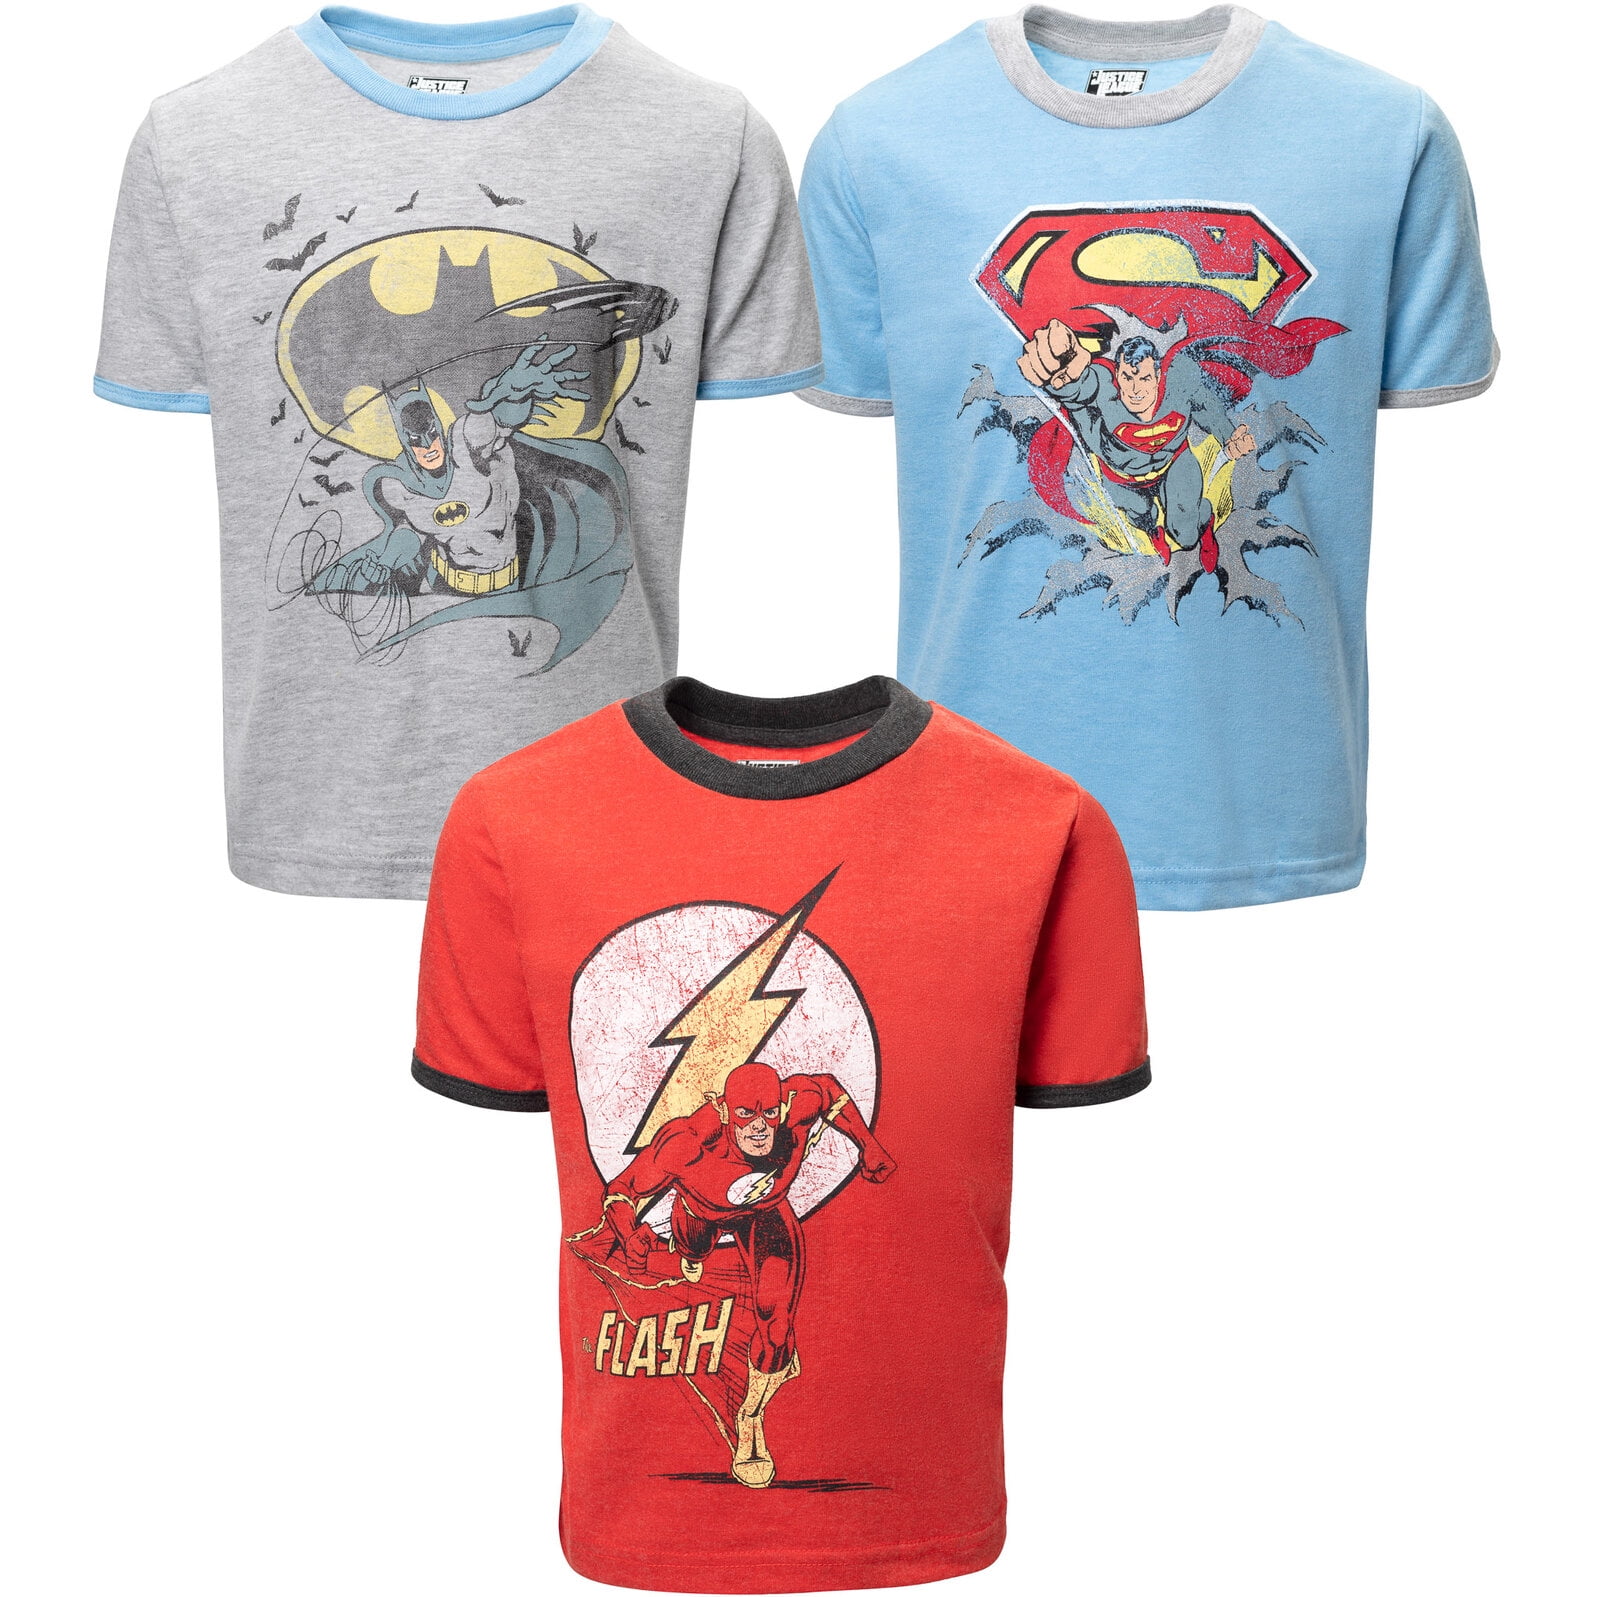 The Graphic Pack 3T Comics 3 T-Shirts League Flash Justice Toddler Boys DC Superman Batman